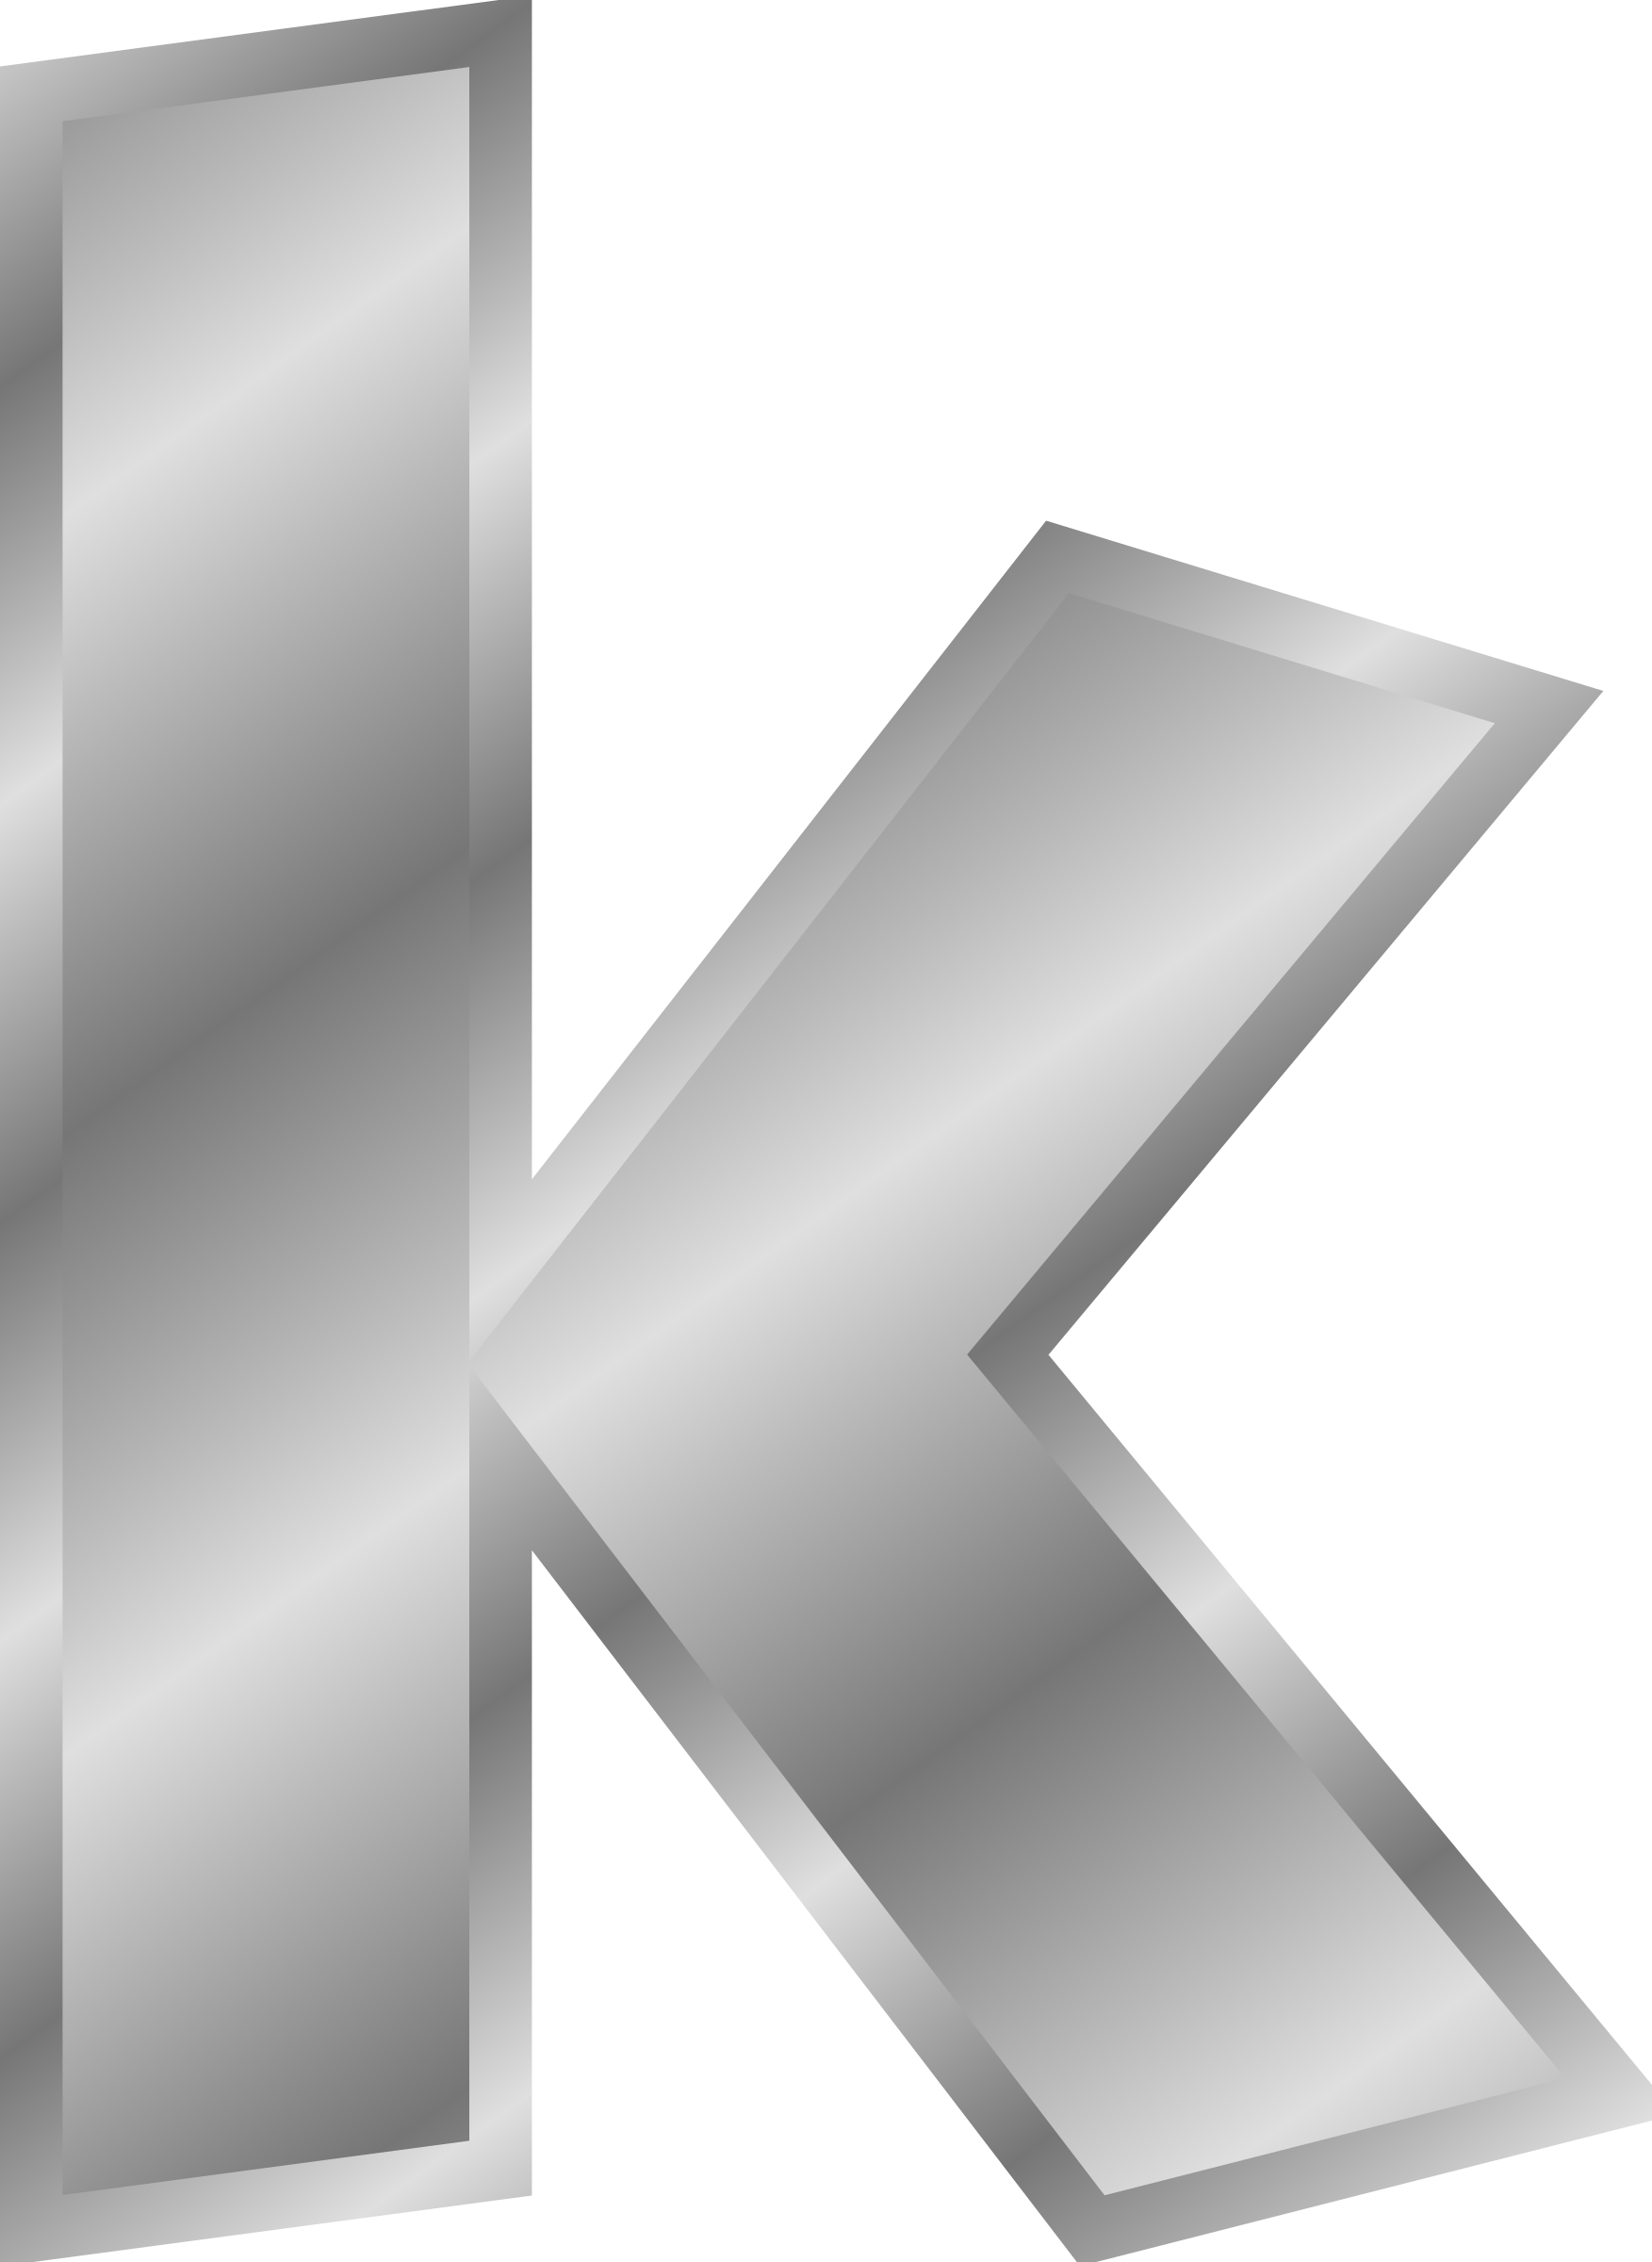 K Letter Transparent Background